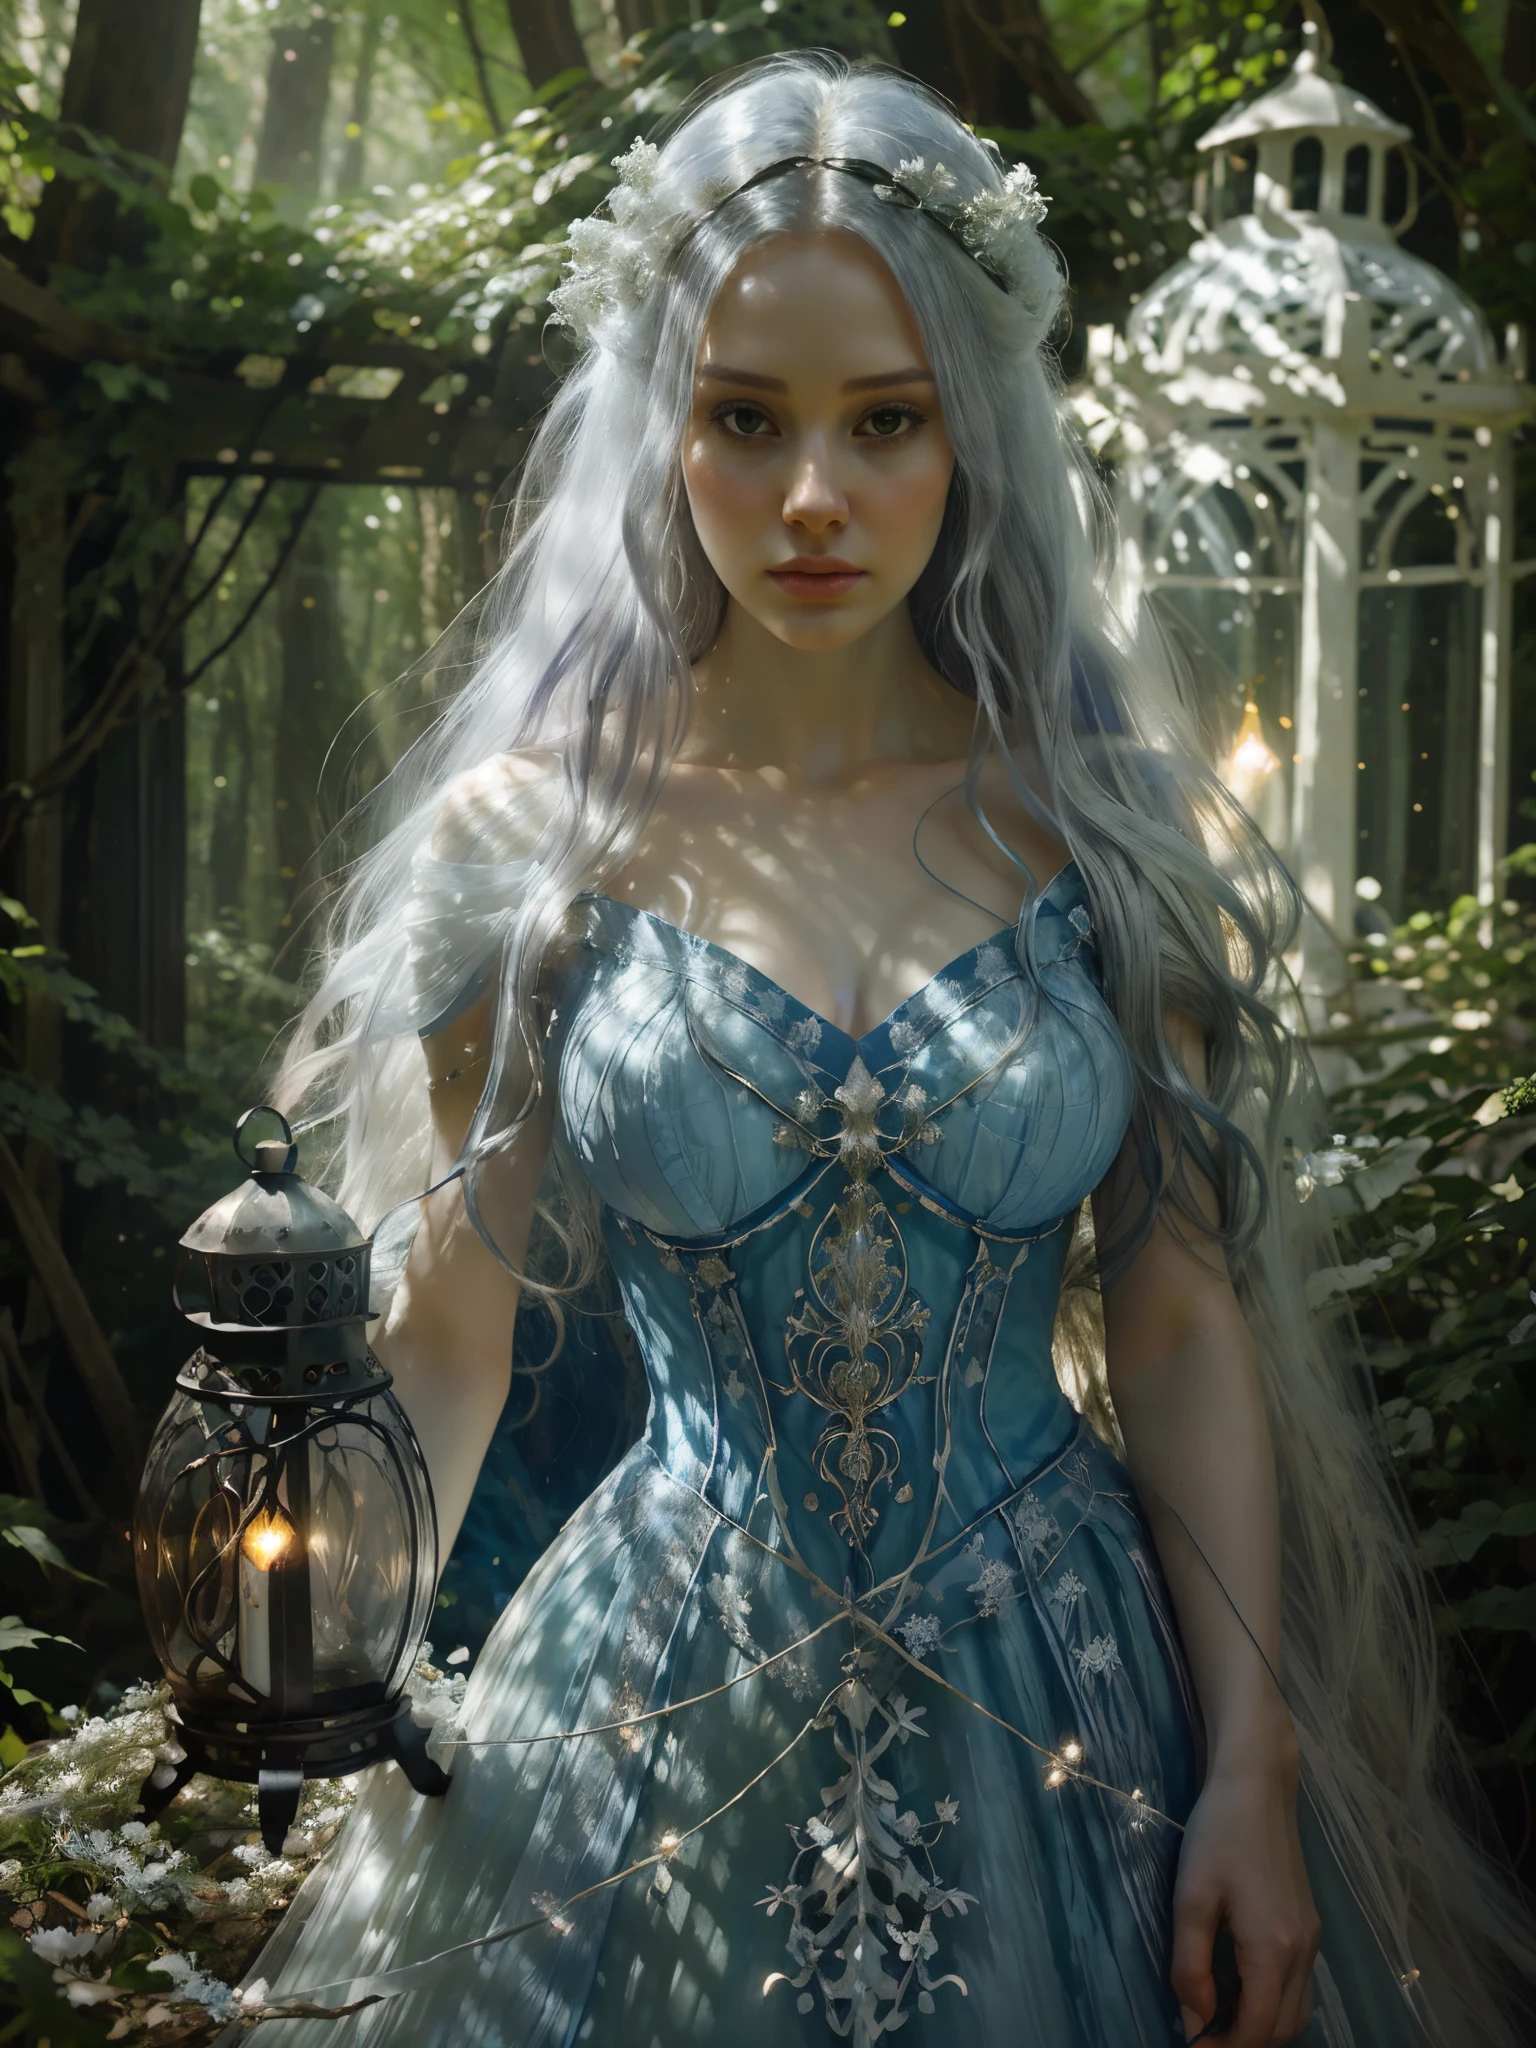 Арафед женщина в синем платье держит фонарь в лесу, цифровое искусство, вдохновленное Синтией Шеппард, Тамблер, Фэнтези-арт, длинные светящиеся неземные волосы, Белая Ведьма, сказочное великолепное освещение, потрясающая молодая неземная фигура, неземная сказка, красивая девушка, Кароль за UHD,  Эрли, с длинными белыми волосами, красивая фантастическая девушка